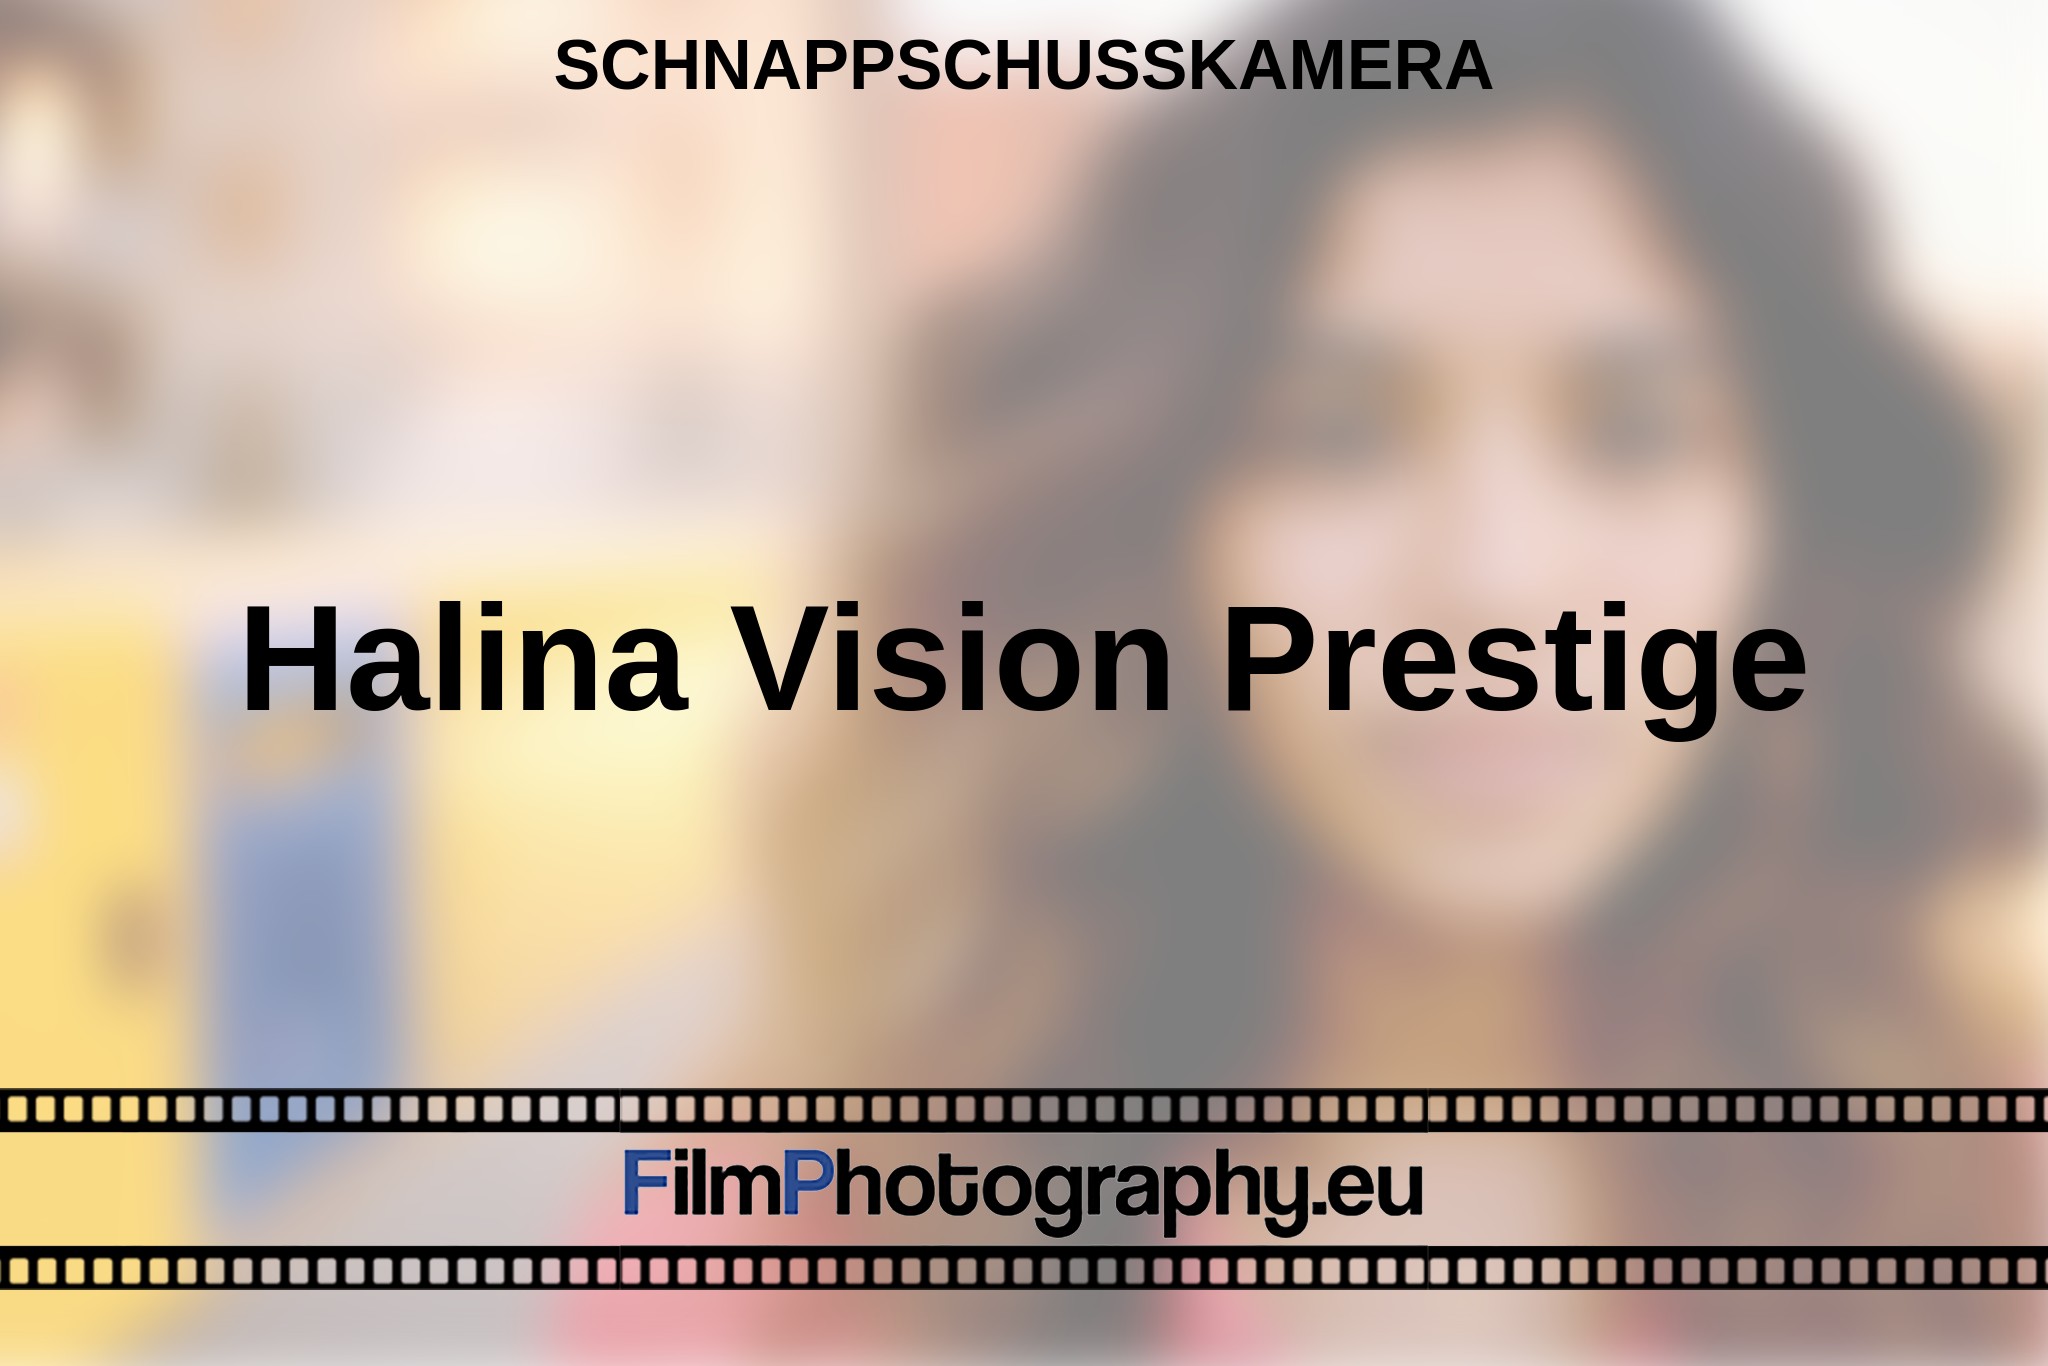 halina-vision-prestige-schnappschusskamera-bnv.jpg